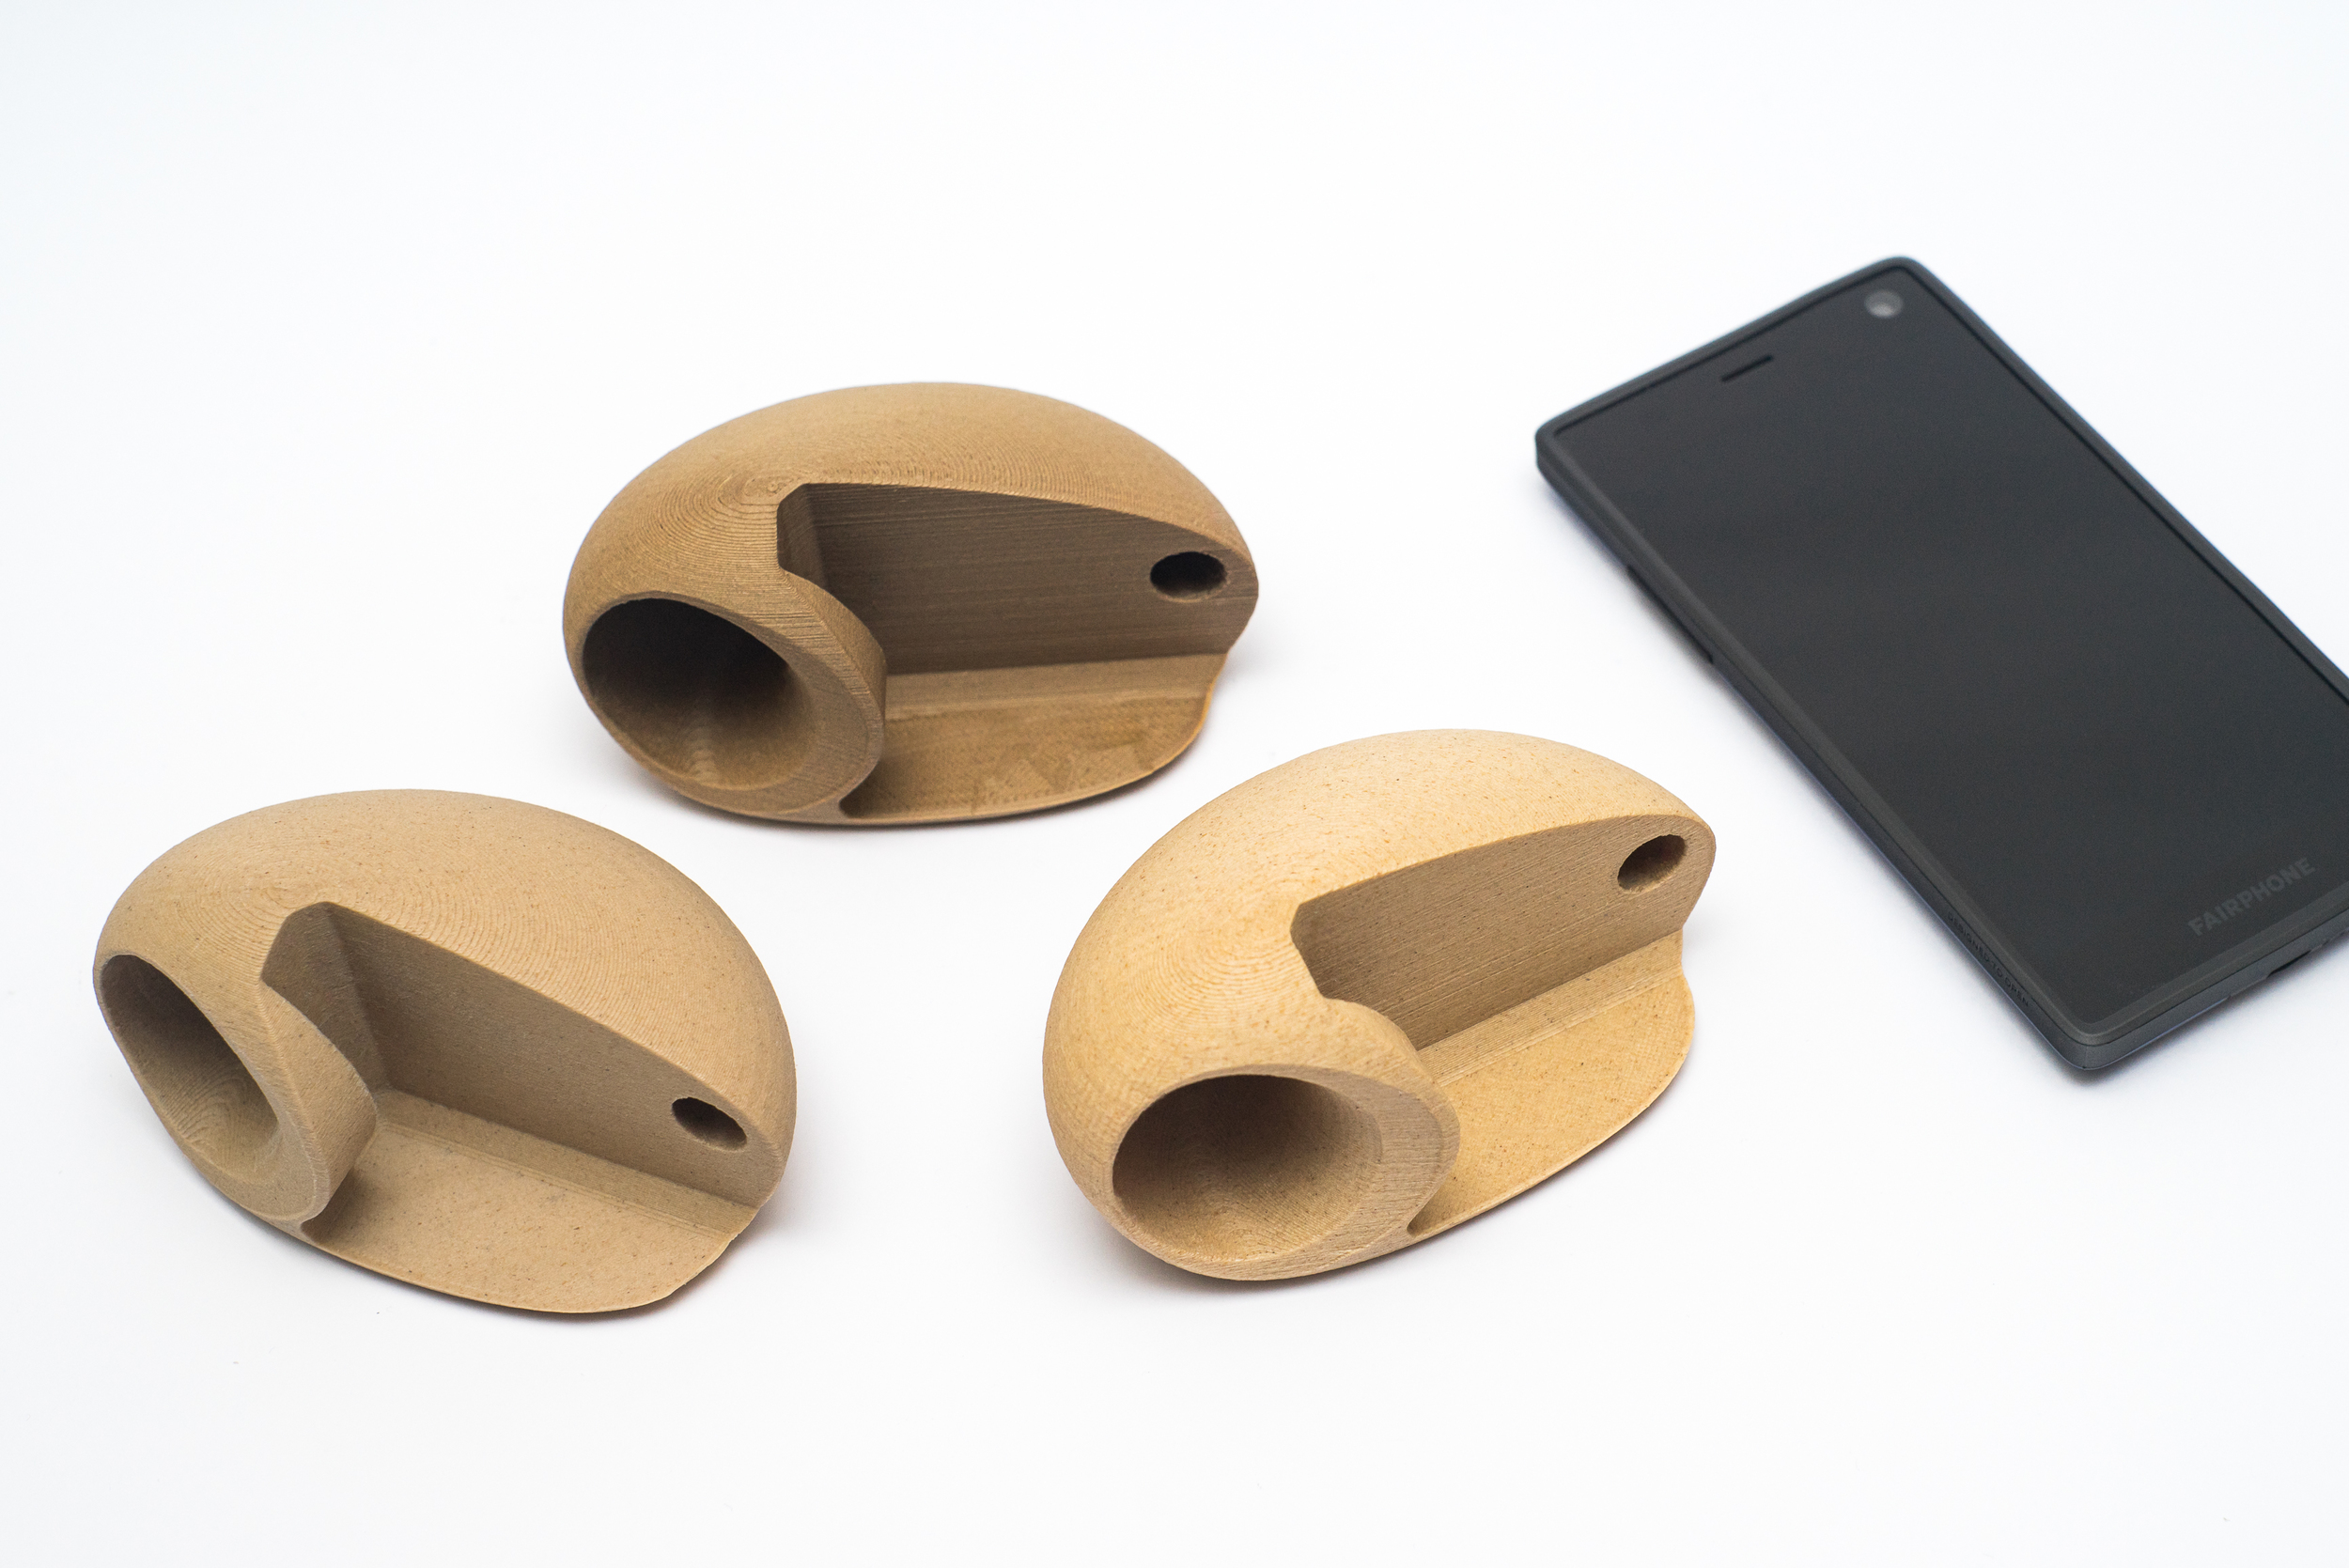 F2Amplifier_Wood-fill_Fairphone_3D-Hubs_3D Printing-Wood-accessories-Alan-Nguyen.jpg